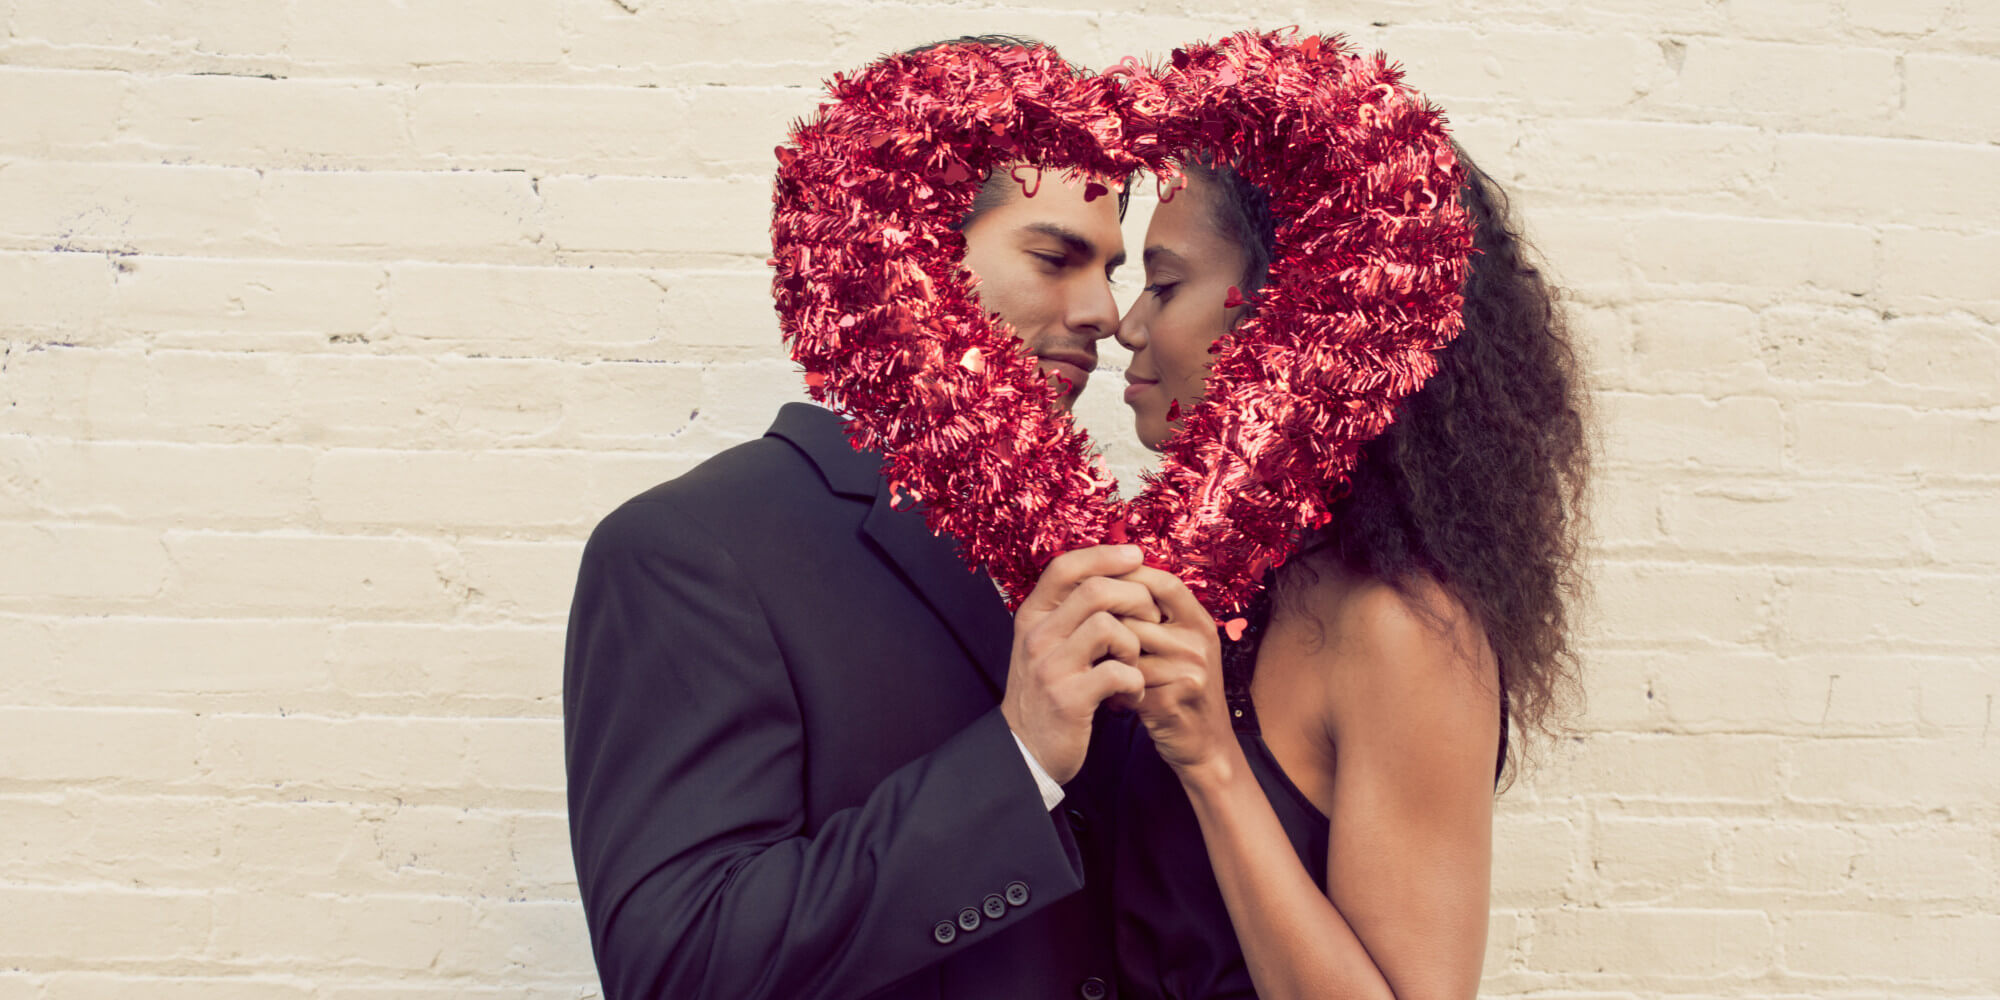 fe título Extracción 35 ideas de fotos románticas para un San Valentín original - Foto24